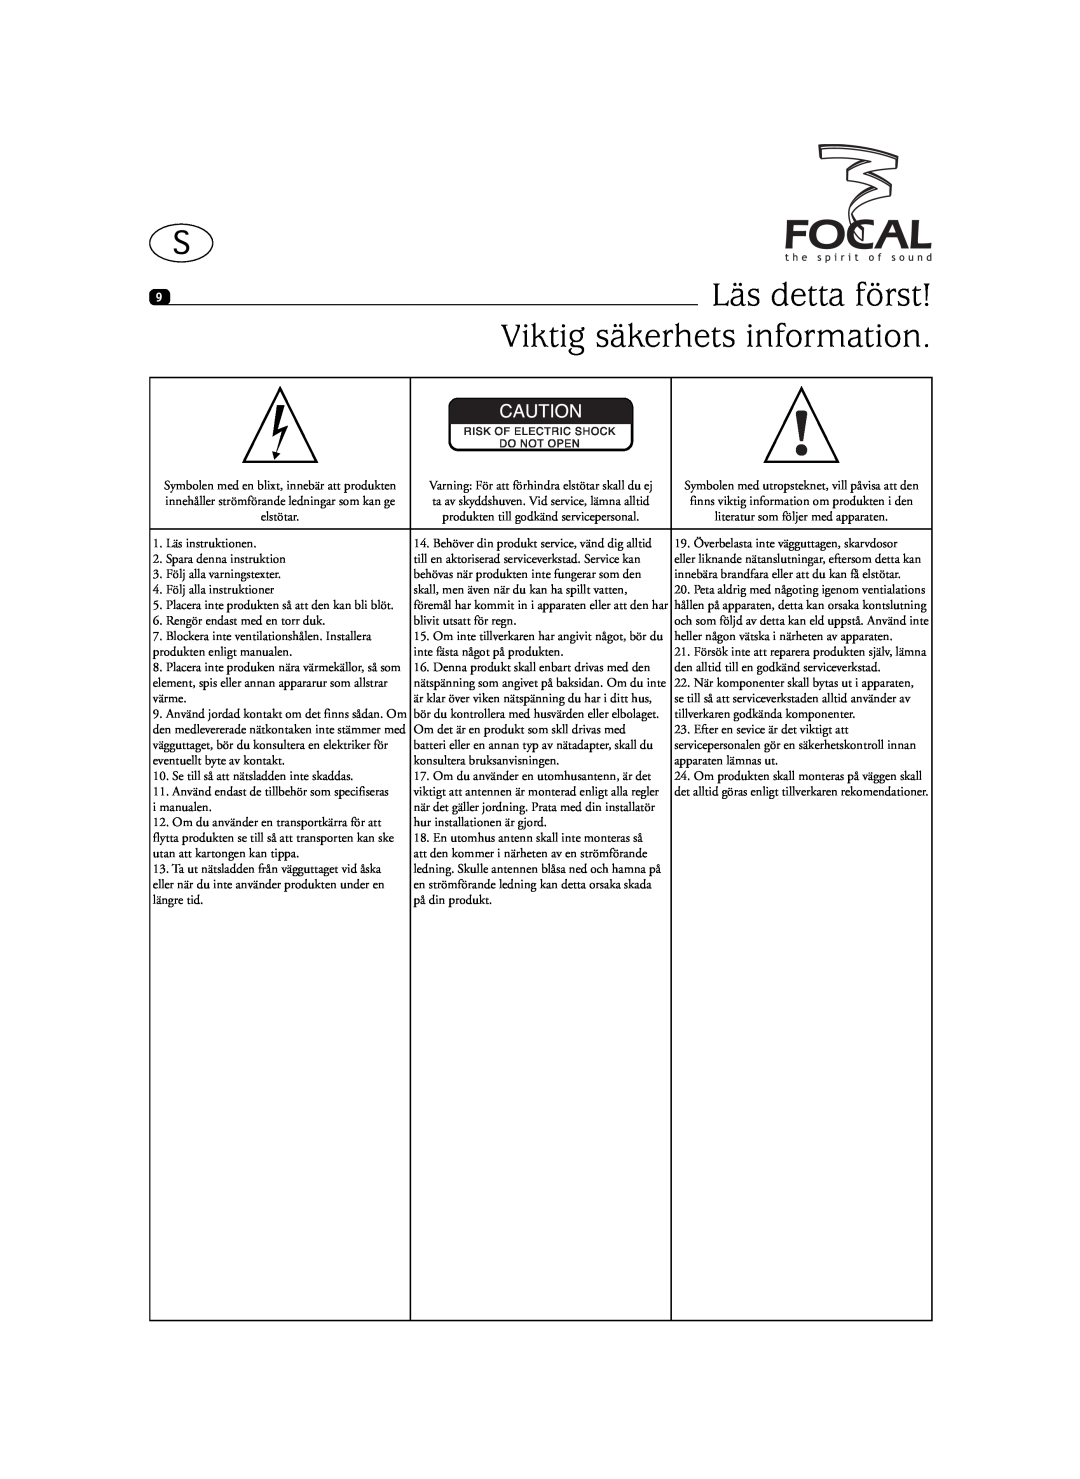 Focal SIB XXL, Sib XL user manual Läs detta först, Viktig säkerhets information 